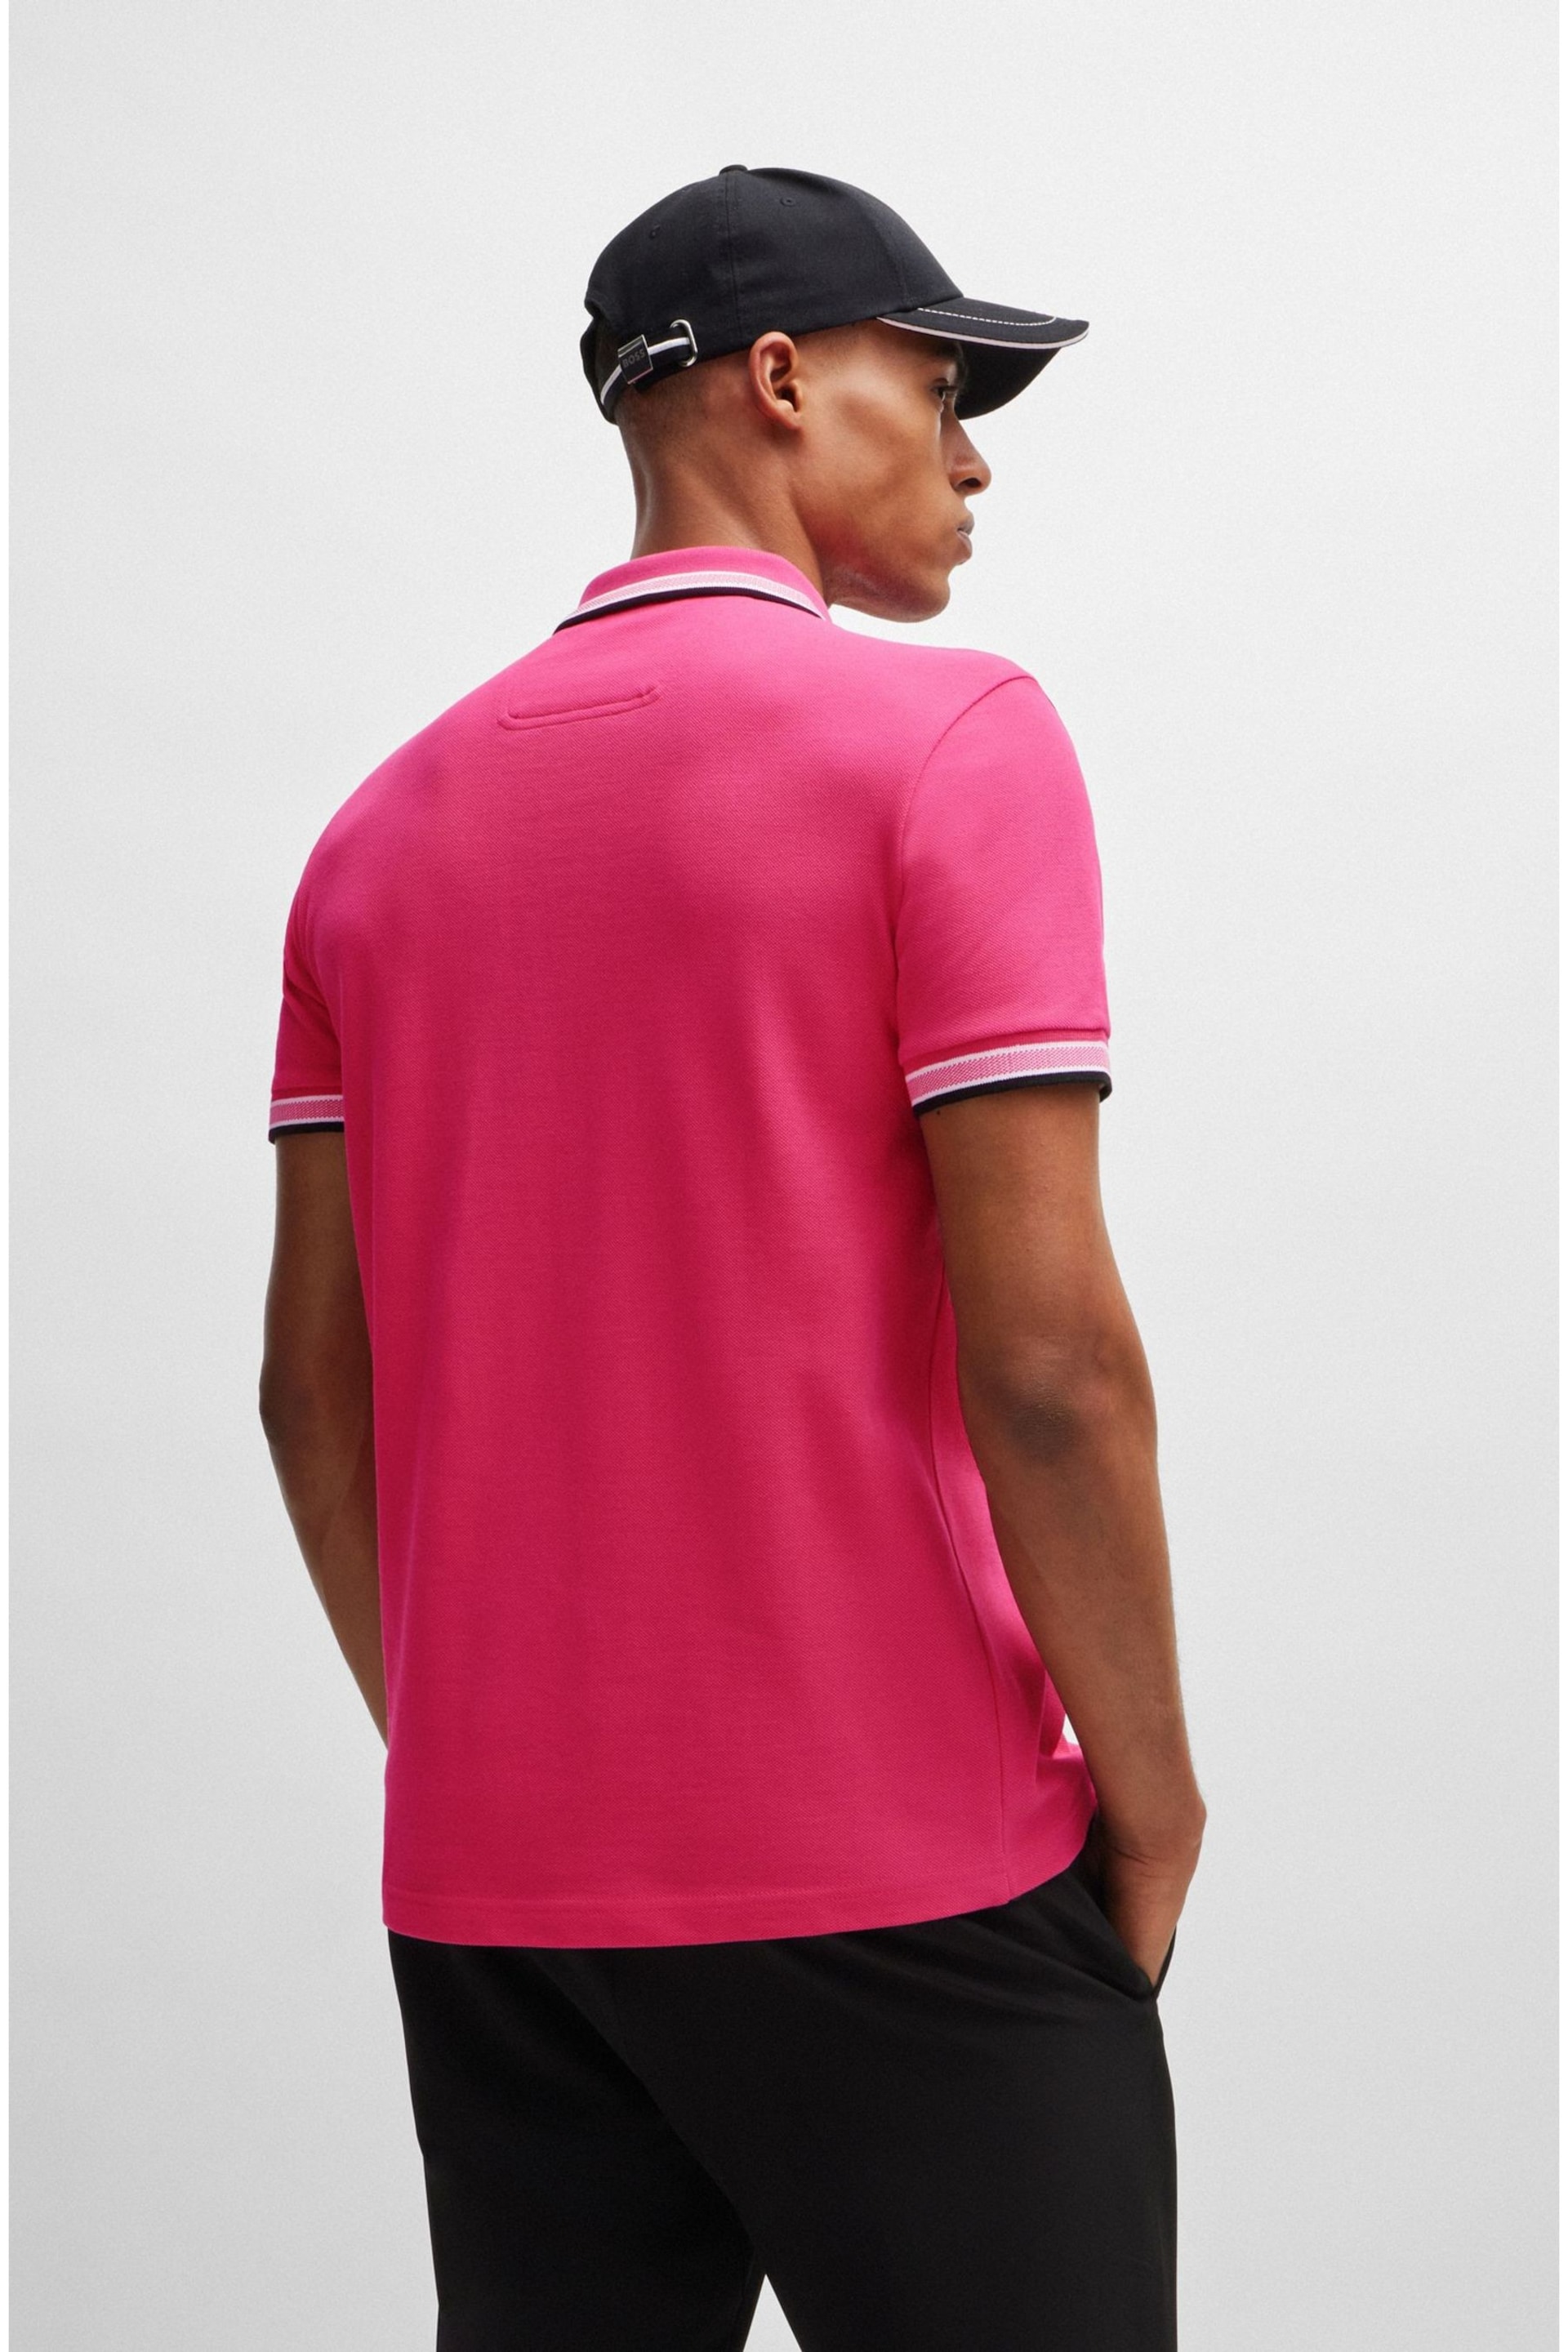 BOSS Light Pink Paddy Polo Pink Cream Shirt - Image 4 of 5